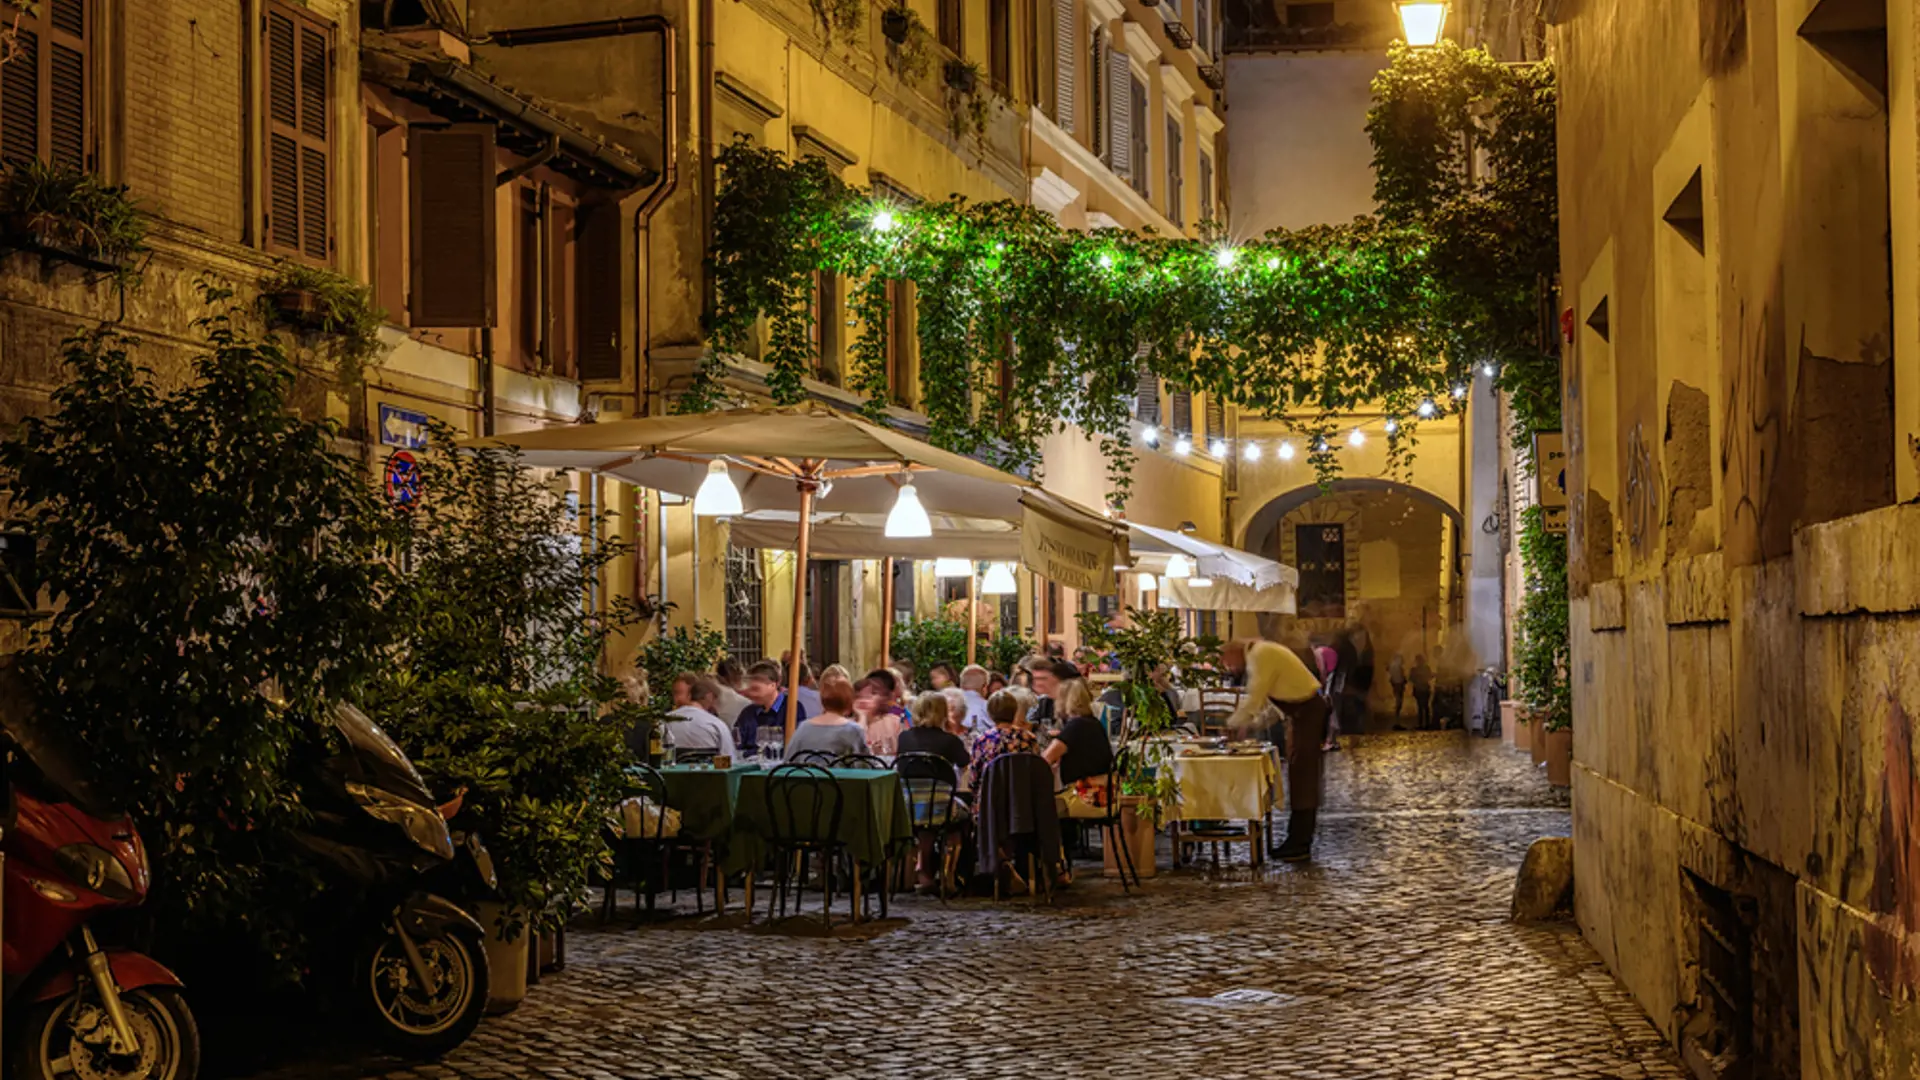 På kvällen är det gott om liv på de kullerstensgator i Trastevere